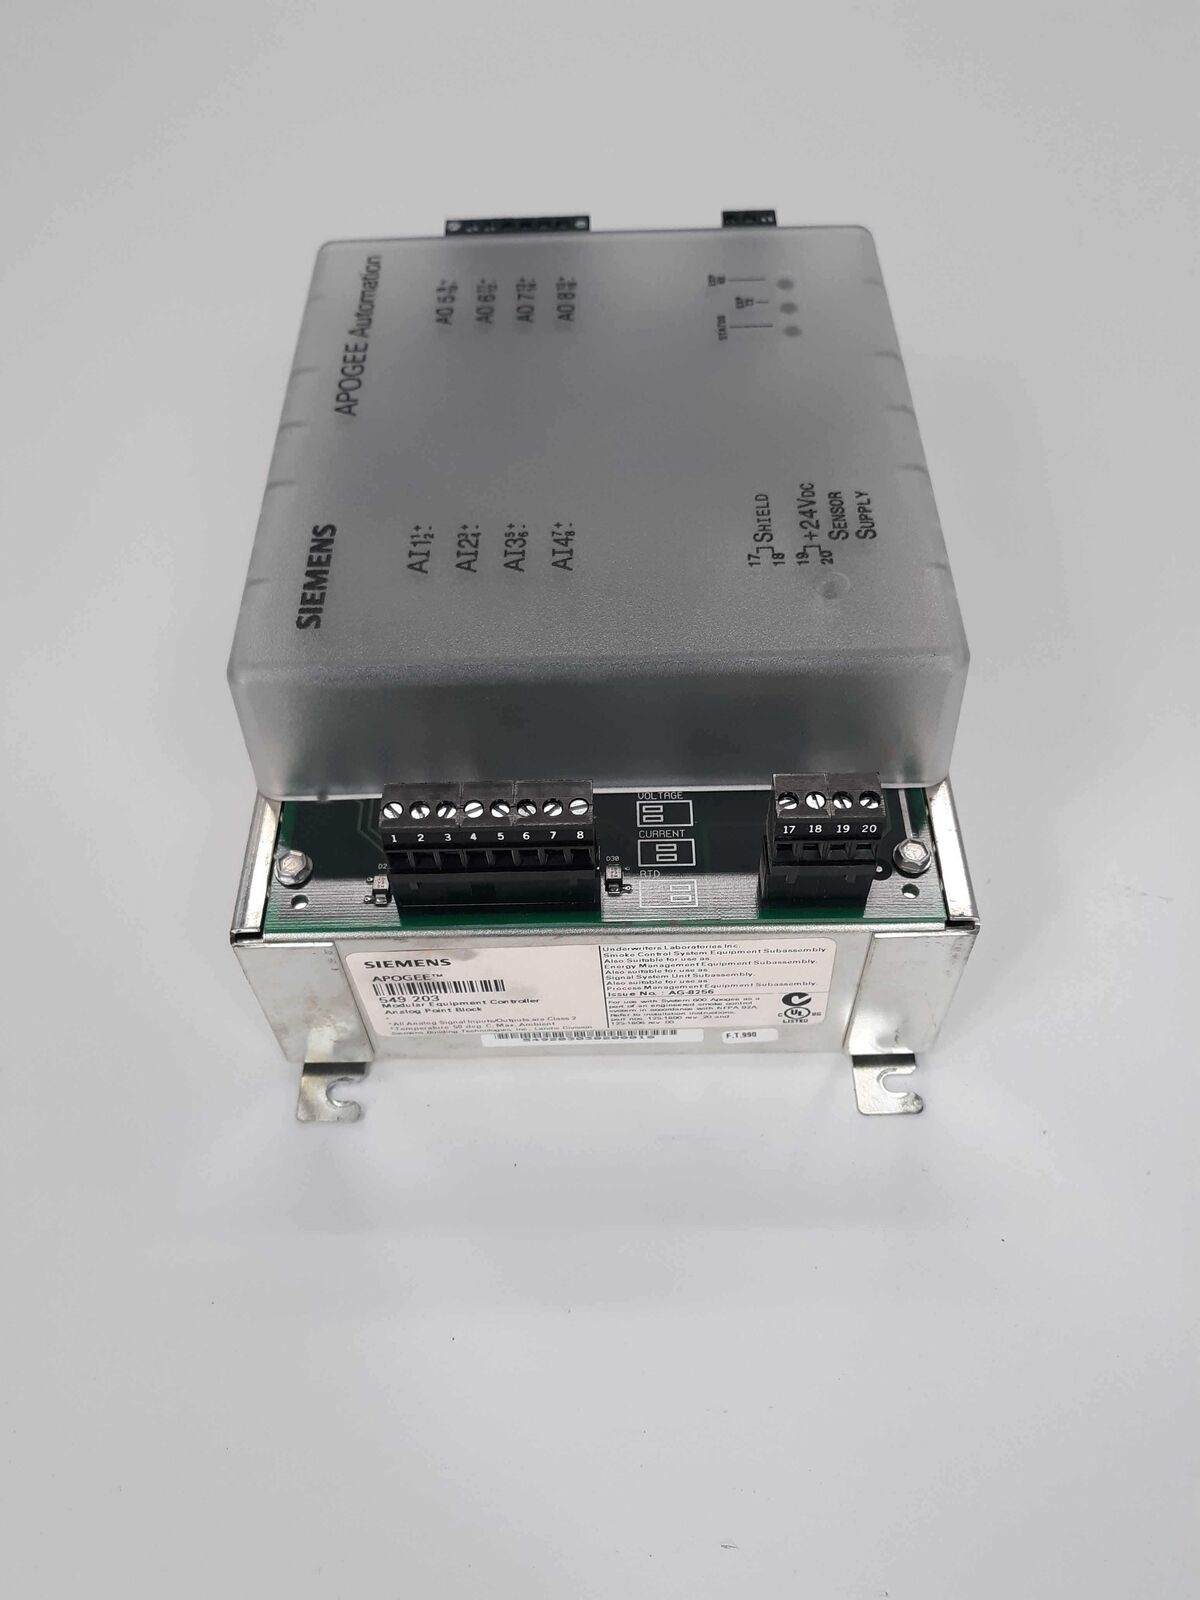 Siemens APOGEE 549 203 Modular Equipment Controller